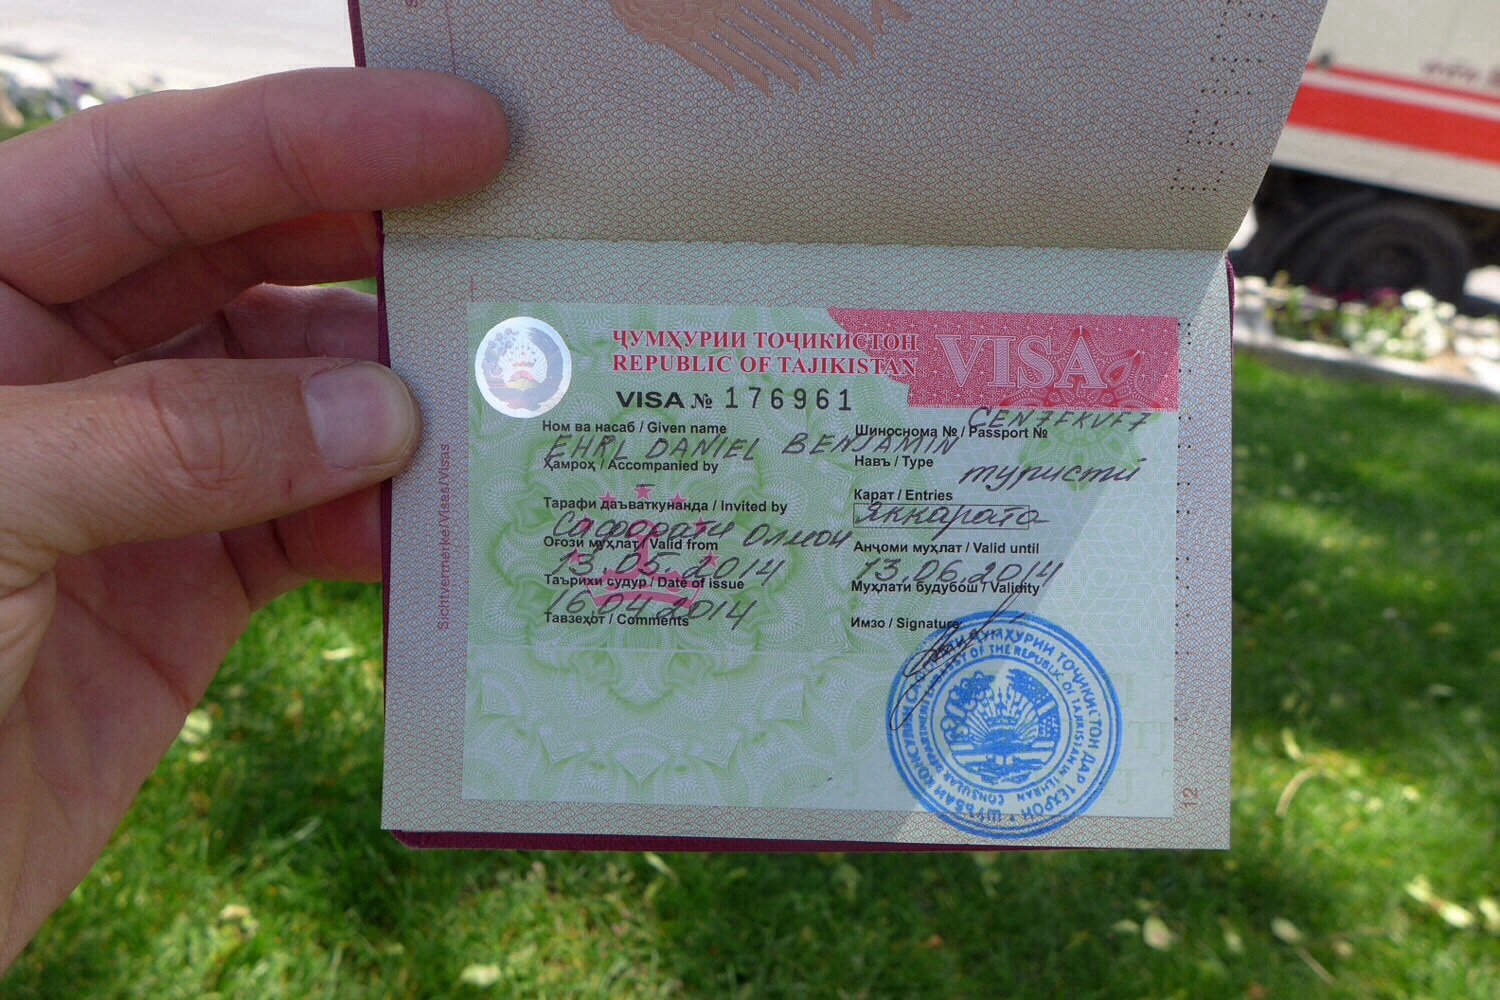 виза в камбоджу требования